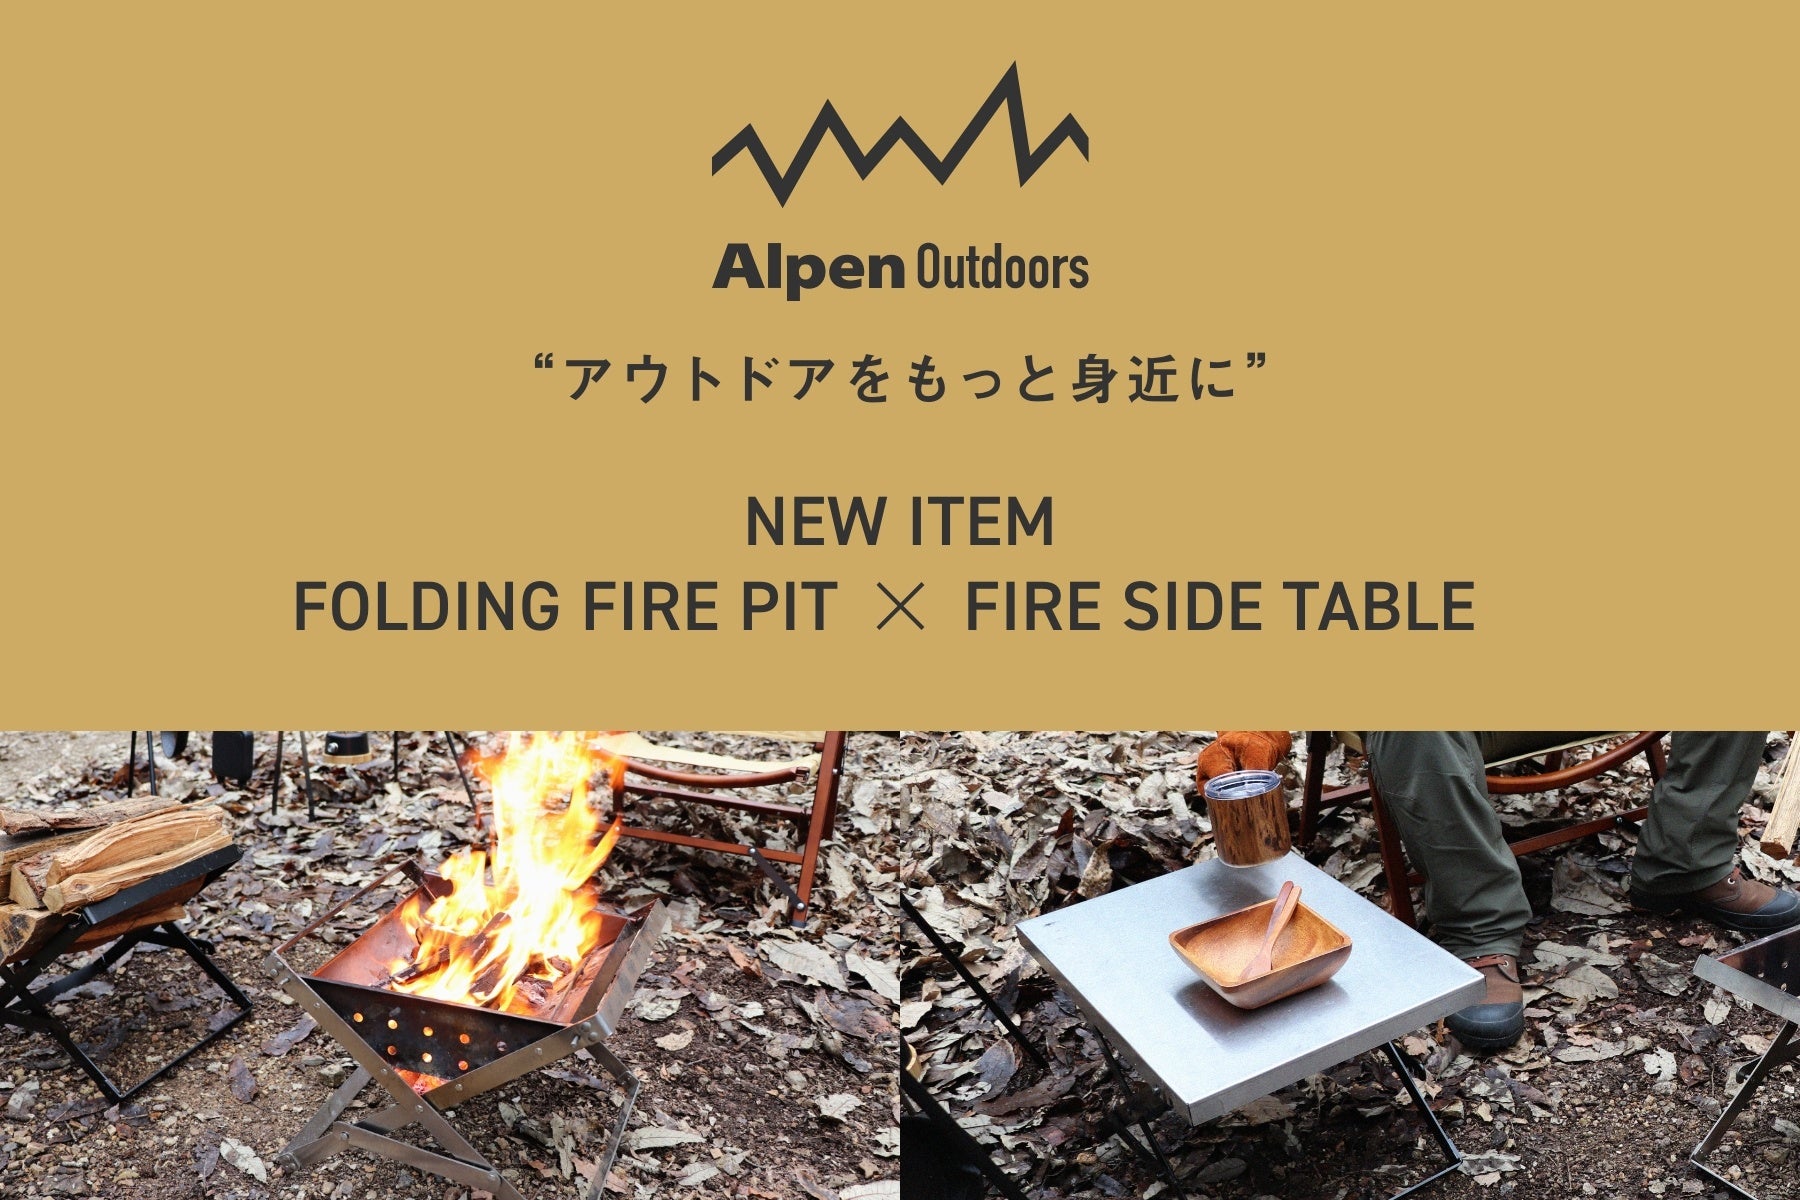 体験型アウトドアショップが展開するプライベートブランド「Alpen Outdoors」より組み立て簡単で耐久性に優れた焚き火アイテム2種を5月27日（金）より販売開始のサブ画像1